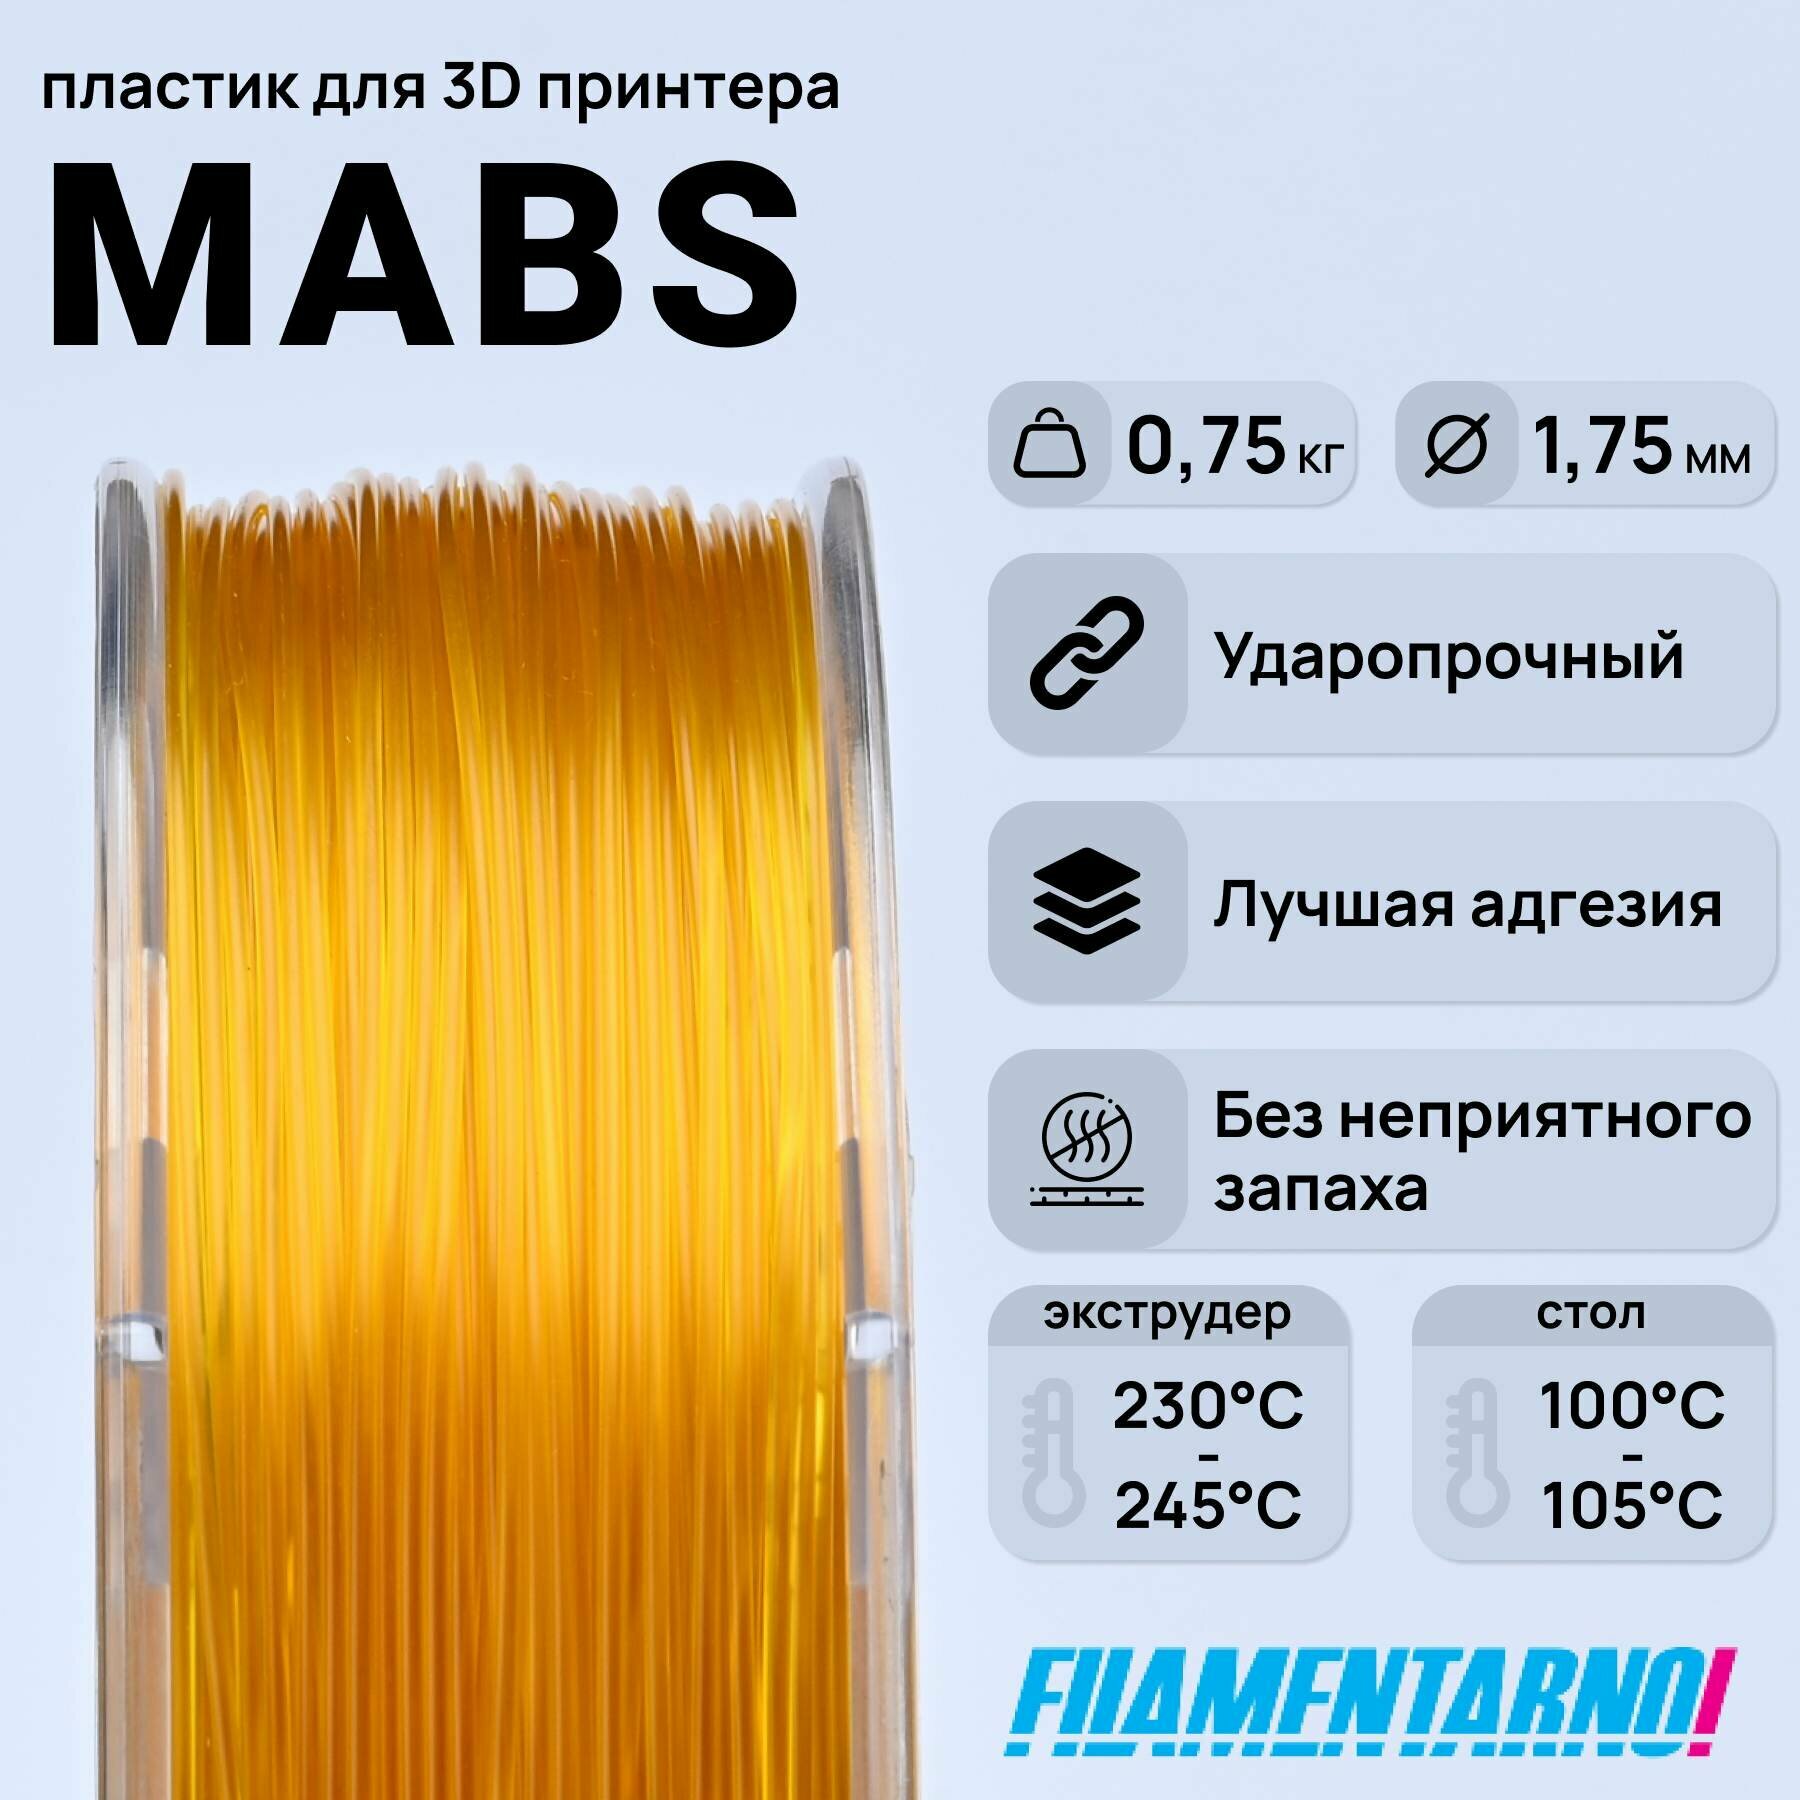 mABS   750 , 1,75 ,  Filamentarno  3D-